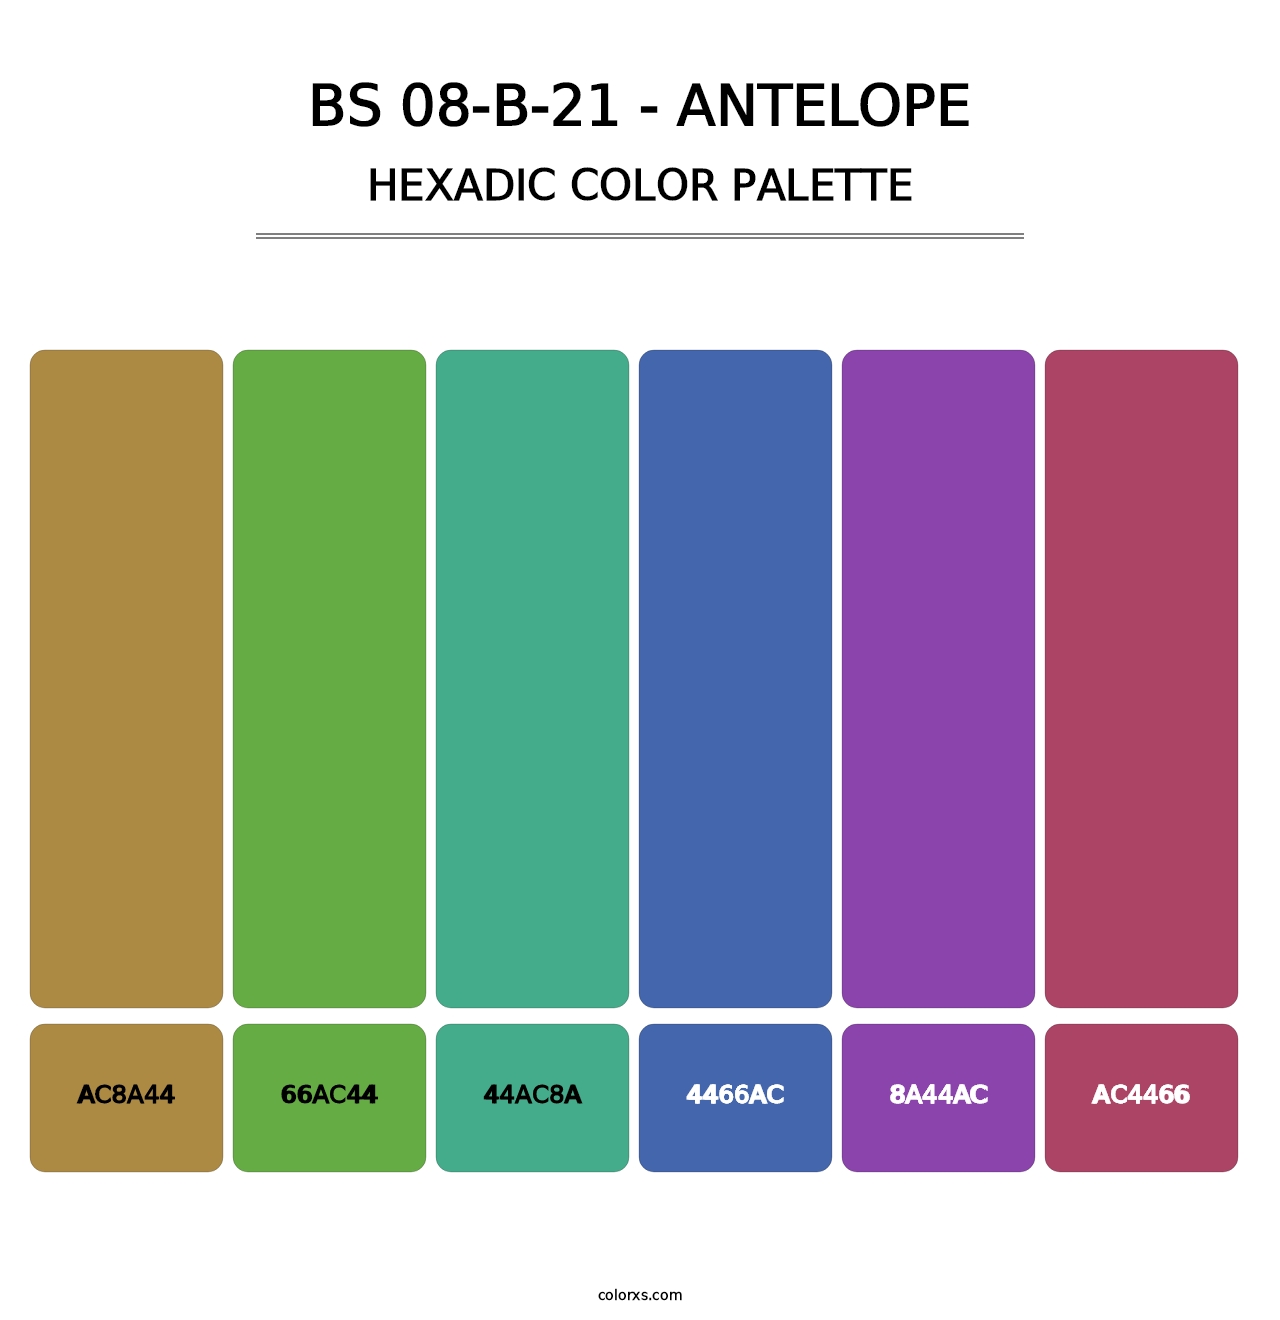 BS 08-B-21 - Antelope - Hexadic Color Palette